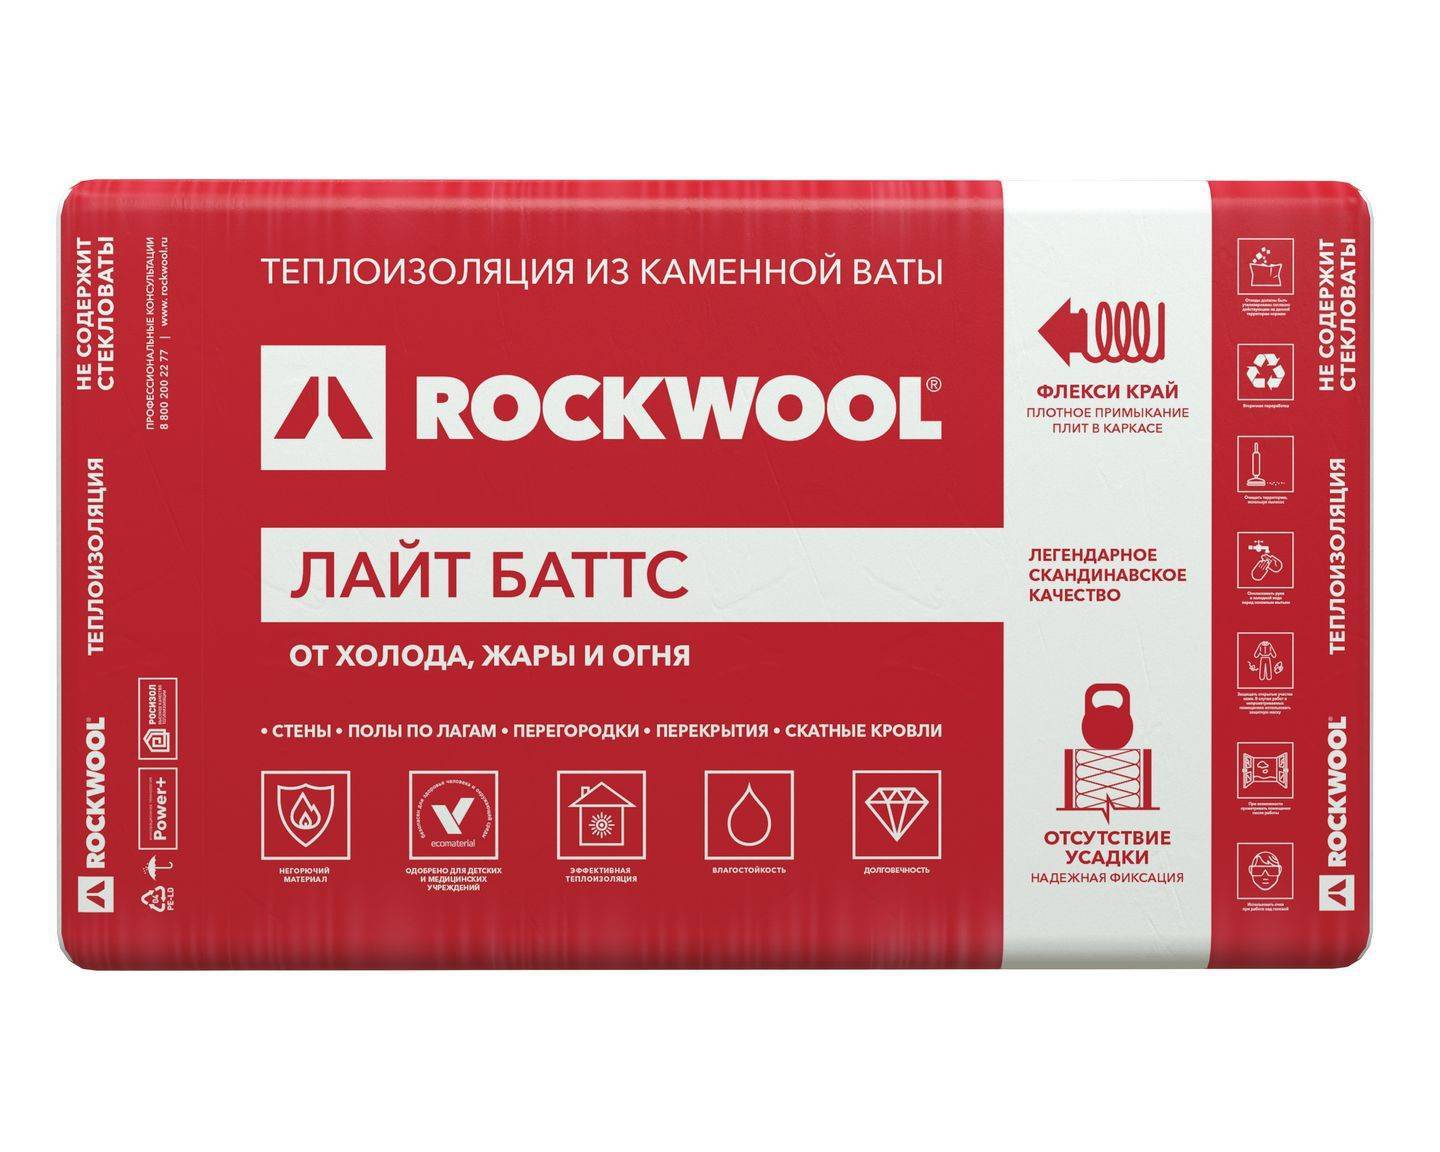 Технические характеристики утеплителя "роквул" и его особенности: минераловатные плиты rockwool лайт баттс